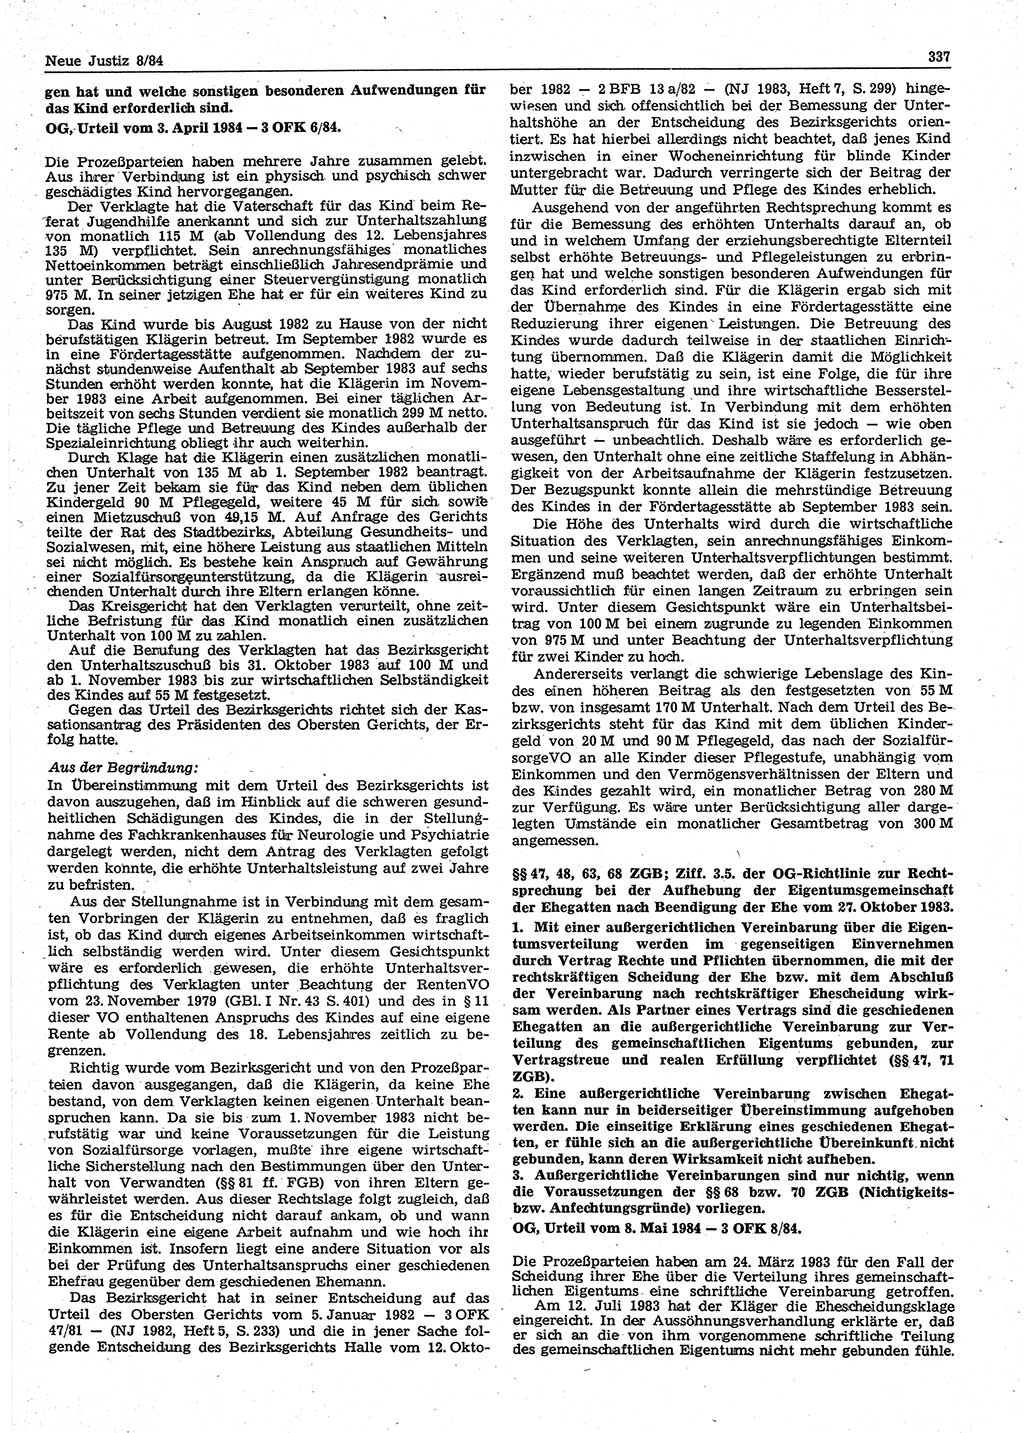 Neue Justiz (NJ), Zeitschrift für sozialistisches Recht und Gesetzlichkeit [Deutsche Demokratische Republik (DDR)], 38. Jahrgang 1984, Seite 337 (NJ DDR 1984, S. 337)